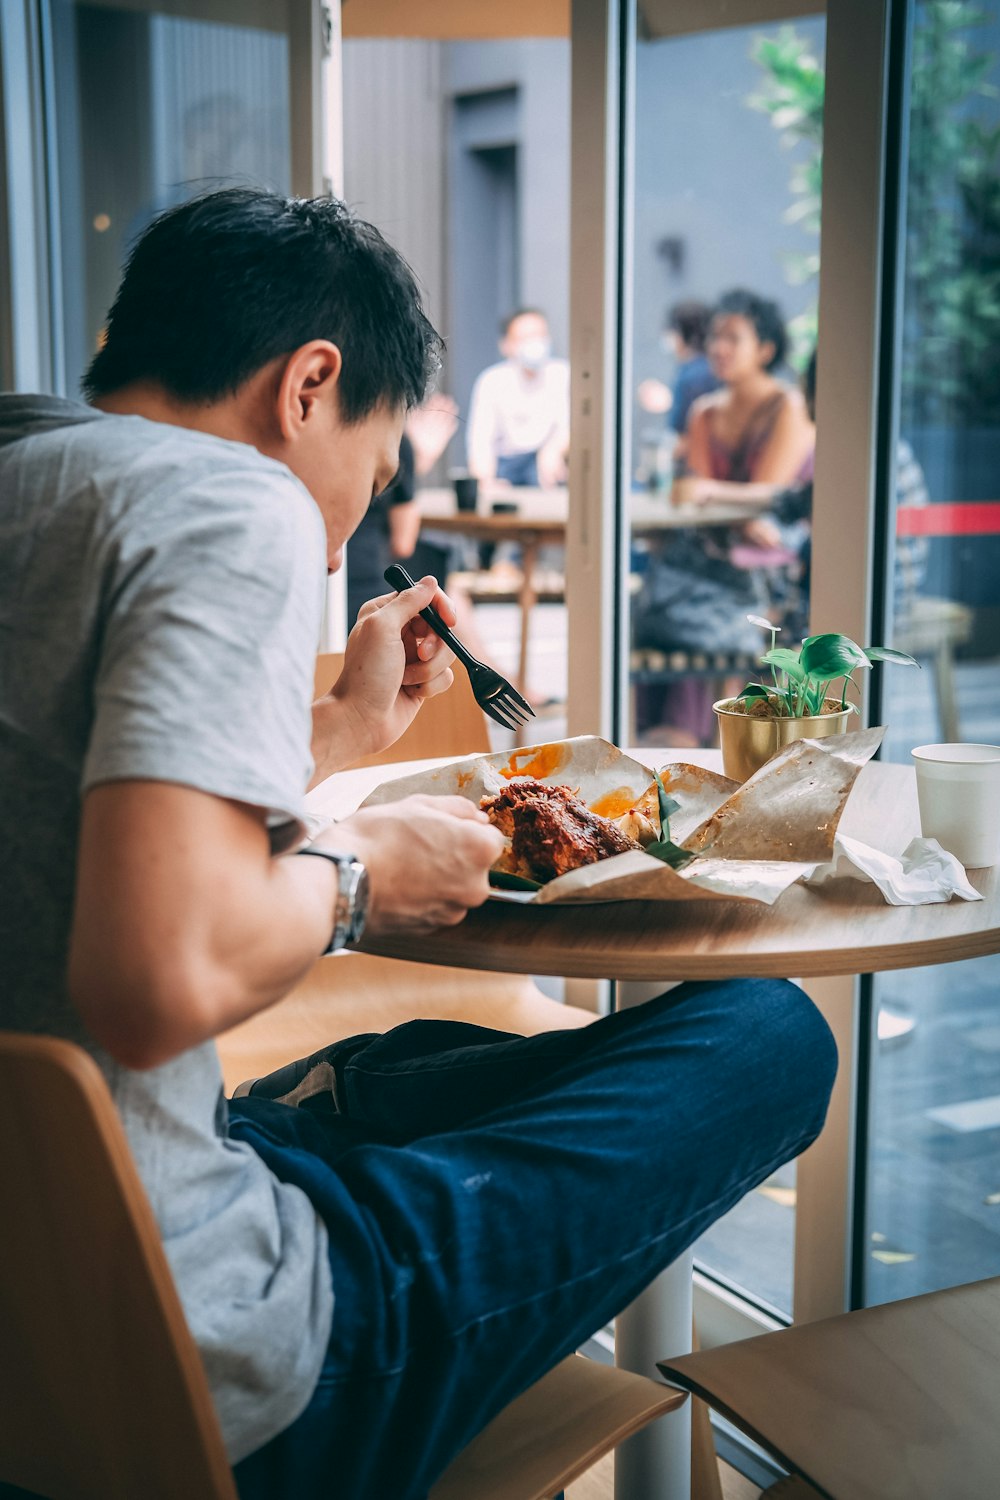 회색 티셔츠를 입은 남자가 식사하는 동안 의자에 앉아 있다